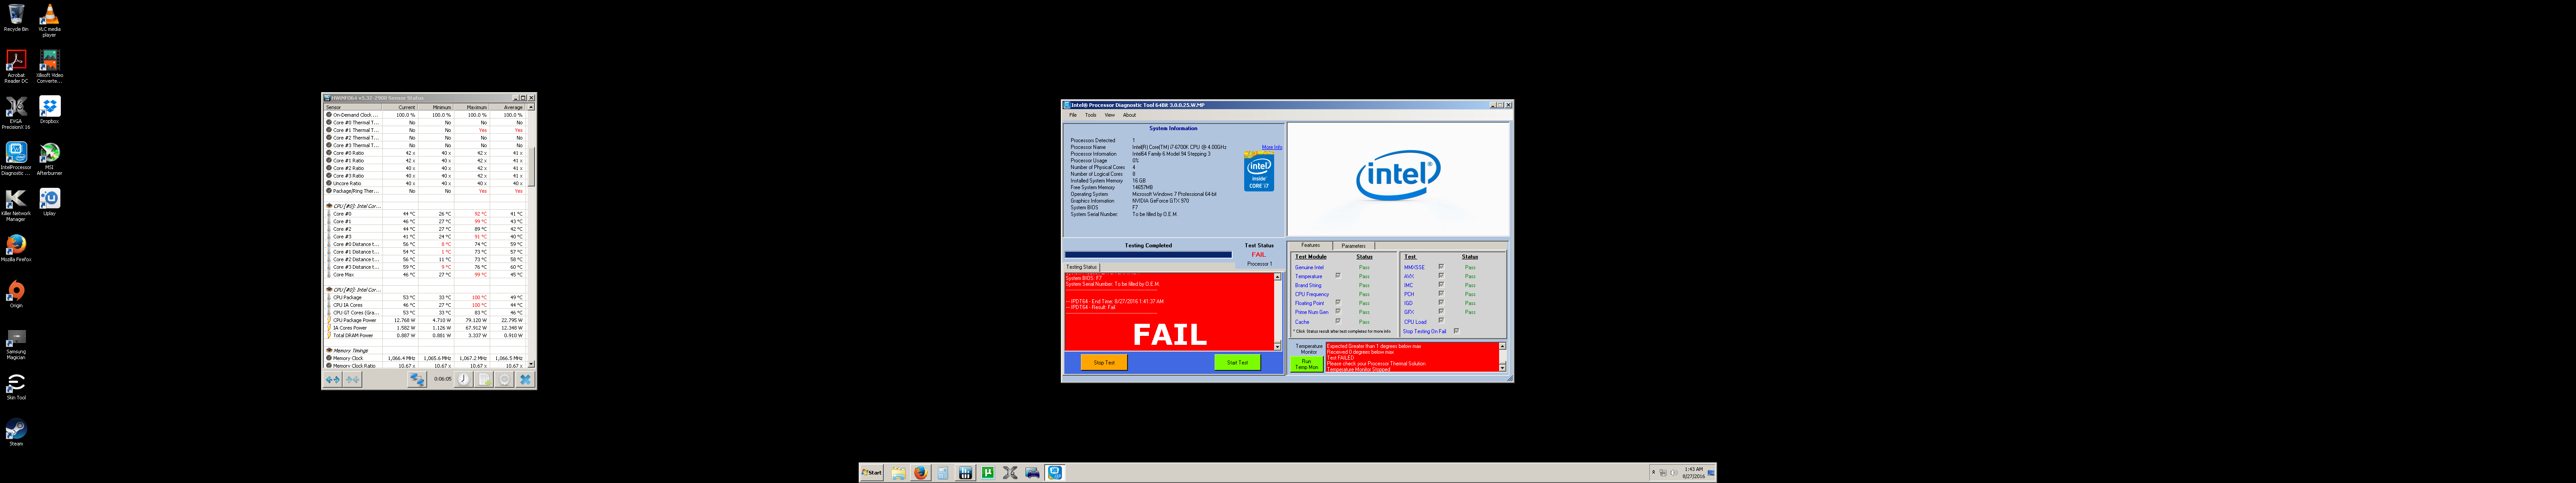 i7-6700k Intel test Fail.png